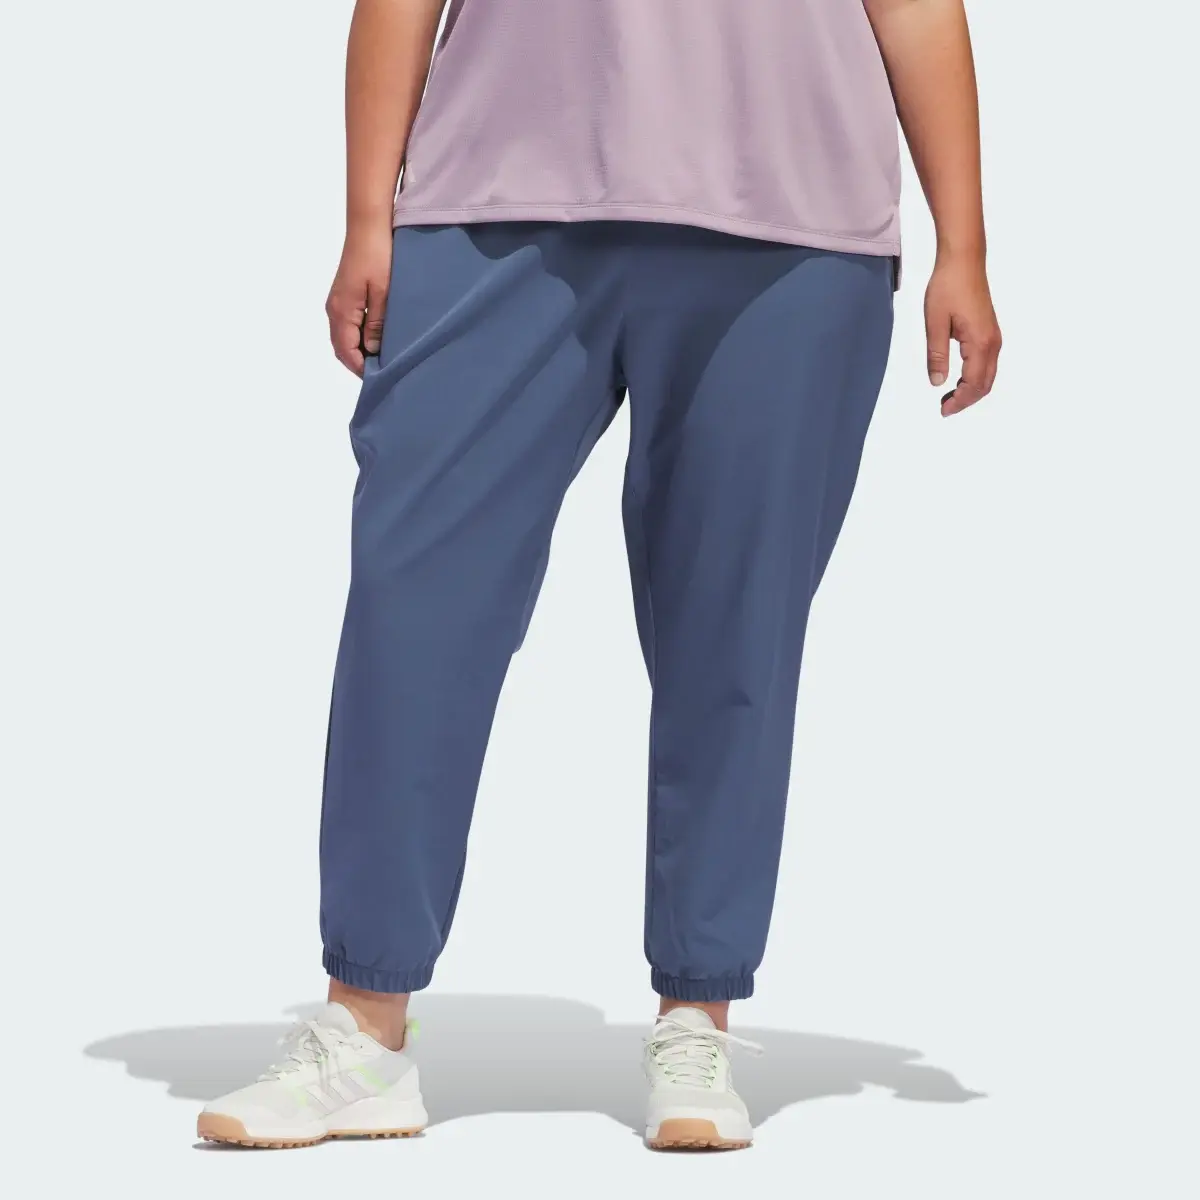 Adidas Spodnie dresowe Women's Ultimate365 (Plus Size). 1